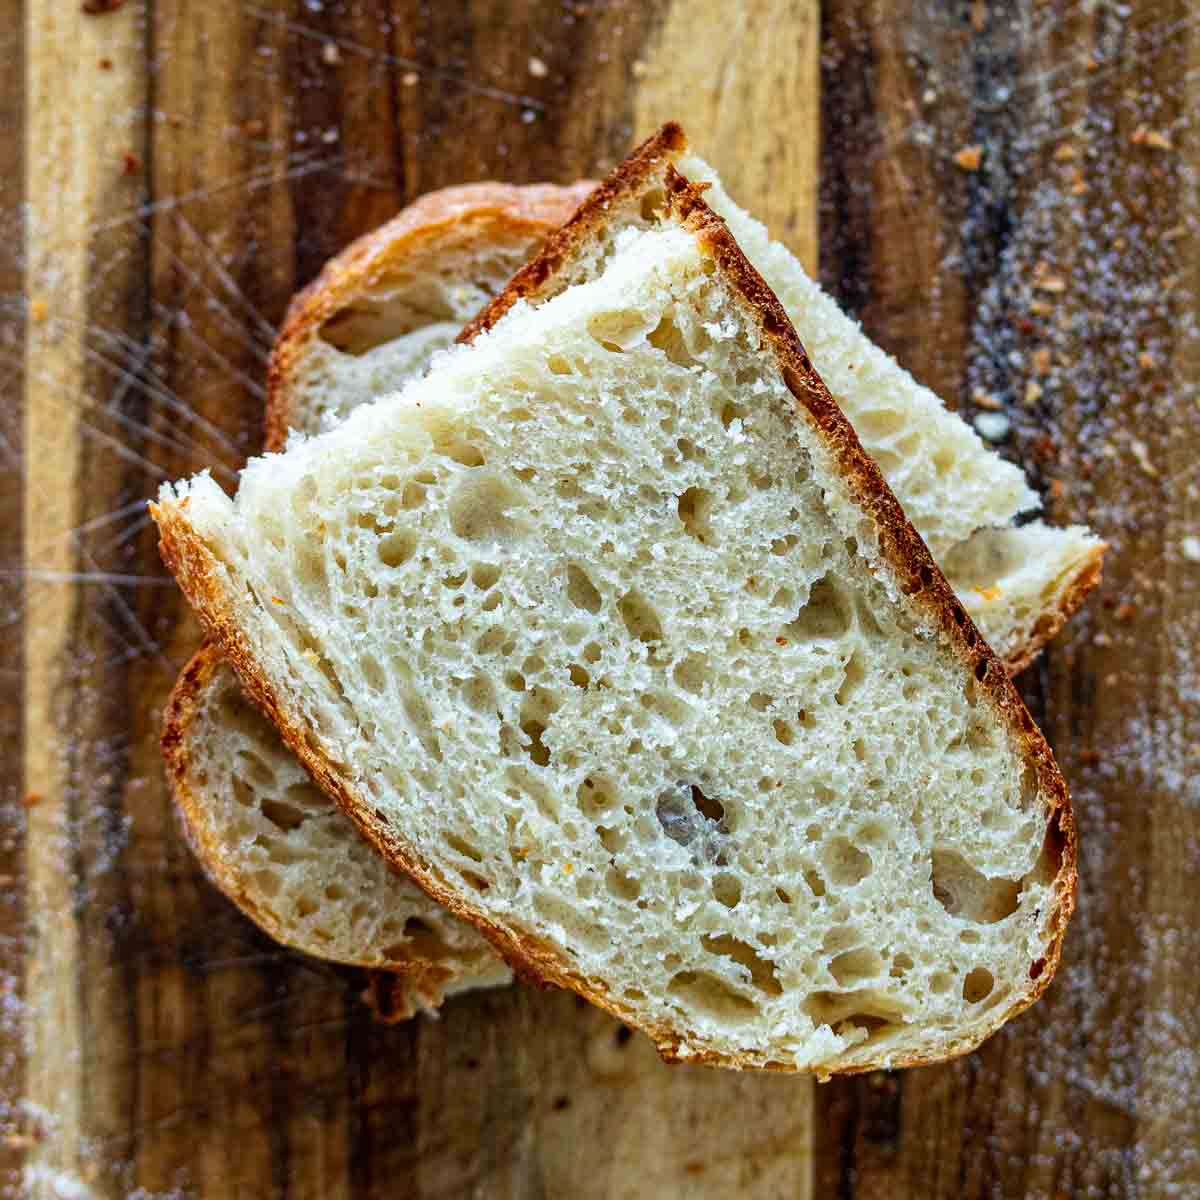 Sourdough bread slices.